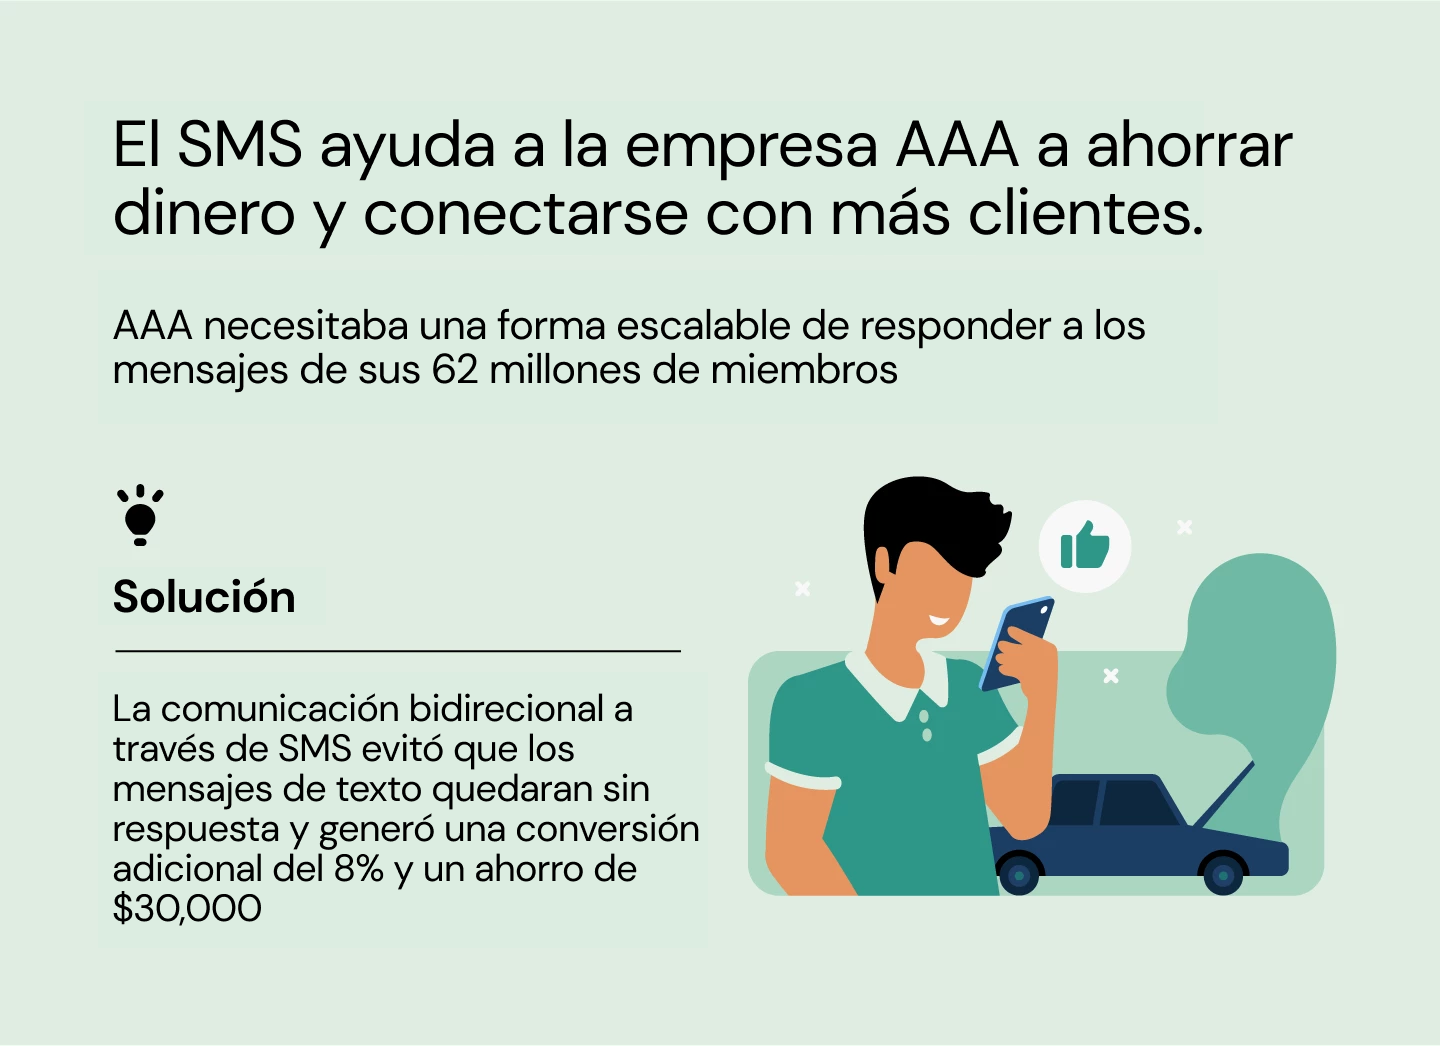 El SMS ayuda a la empresa AAA a ahorrar dinero y conectarse con más clientes